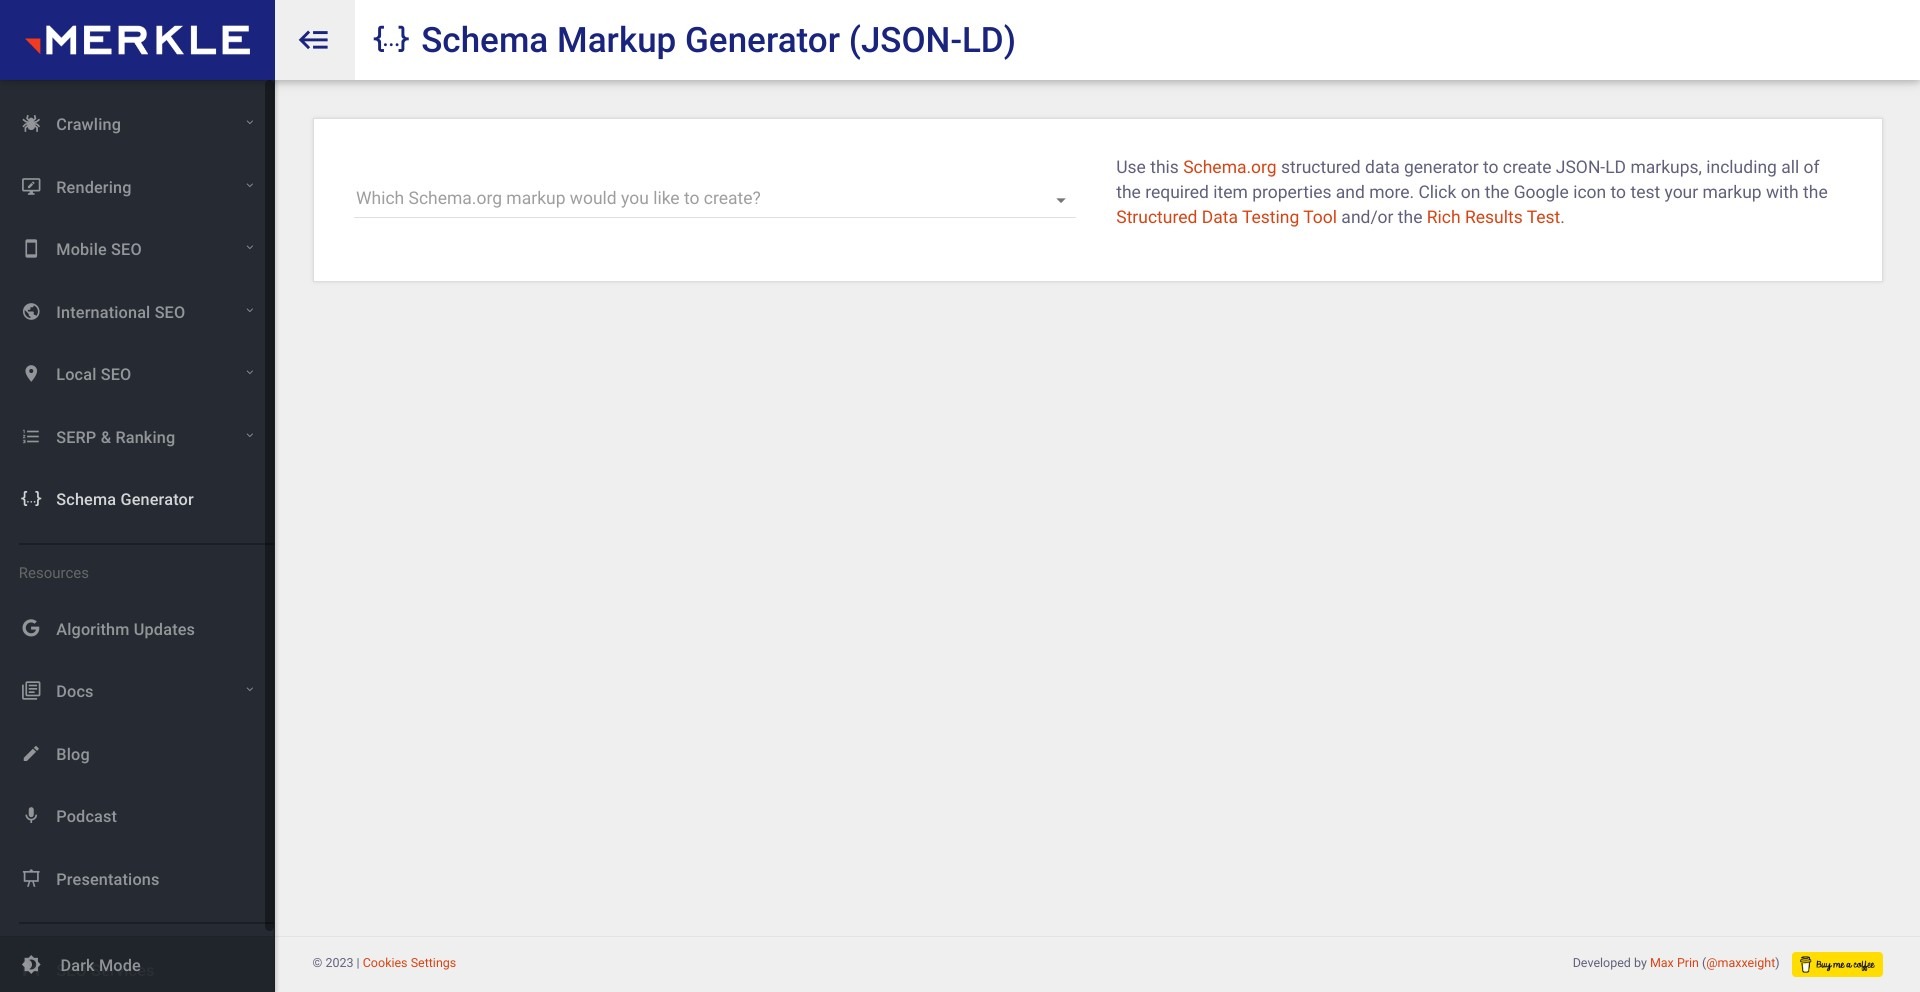 Schema Markup Generator by Merkle